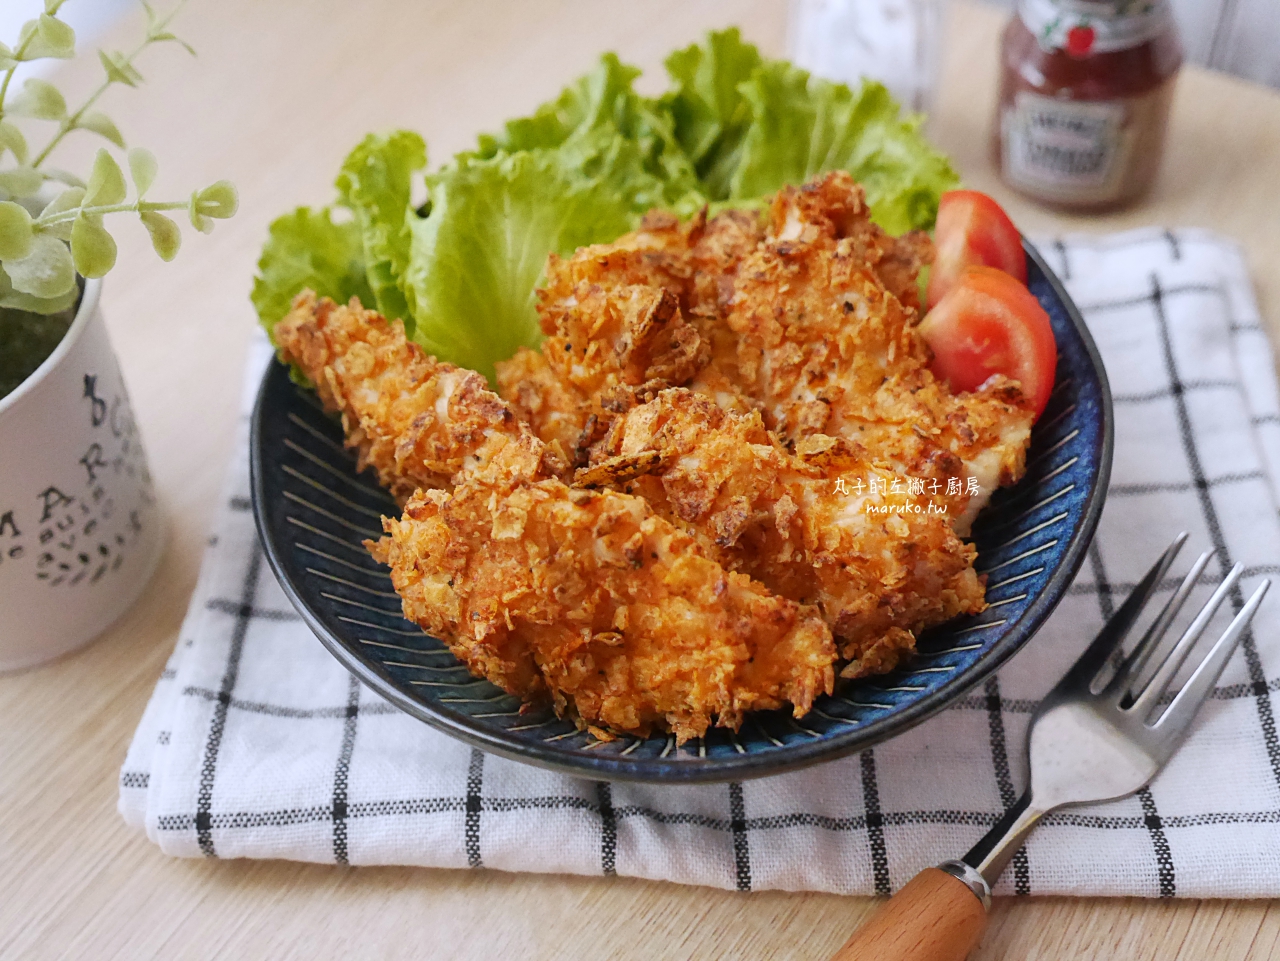 【食譜】40道雞肉料理 包含雞胸肉、雞腿肉、雞翅、雞小腿、雞柳條 異國料理運用分享 @Maruko與美食有個約會